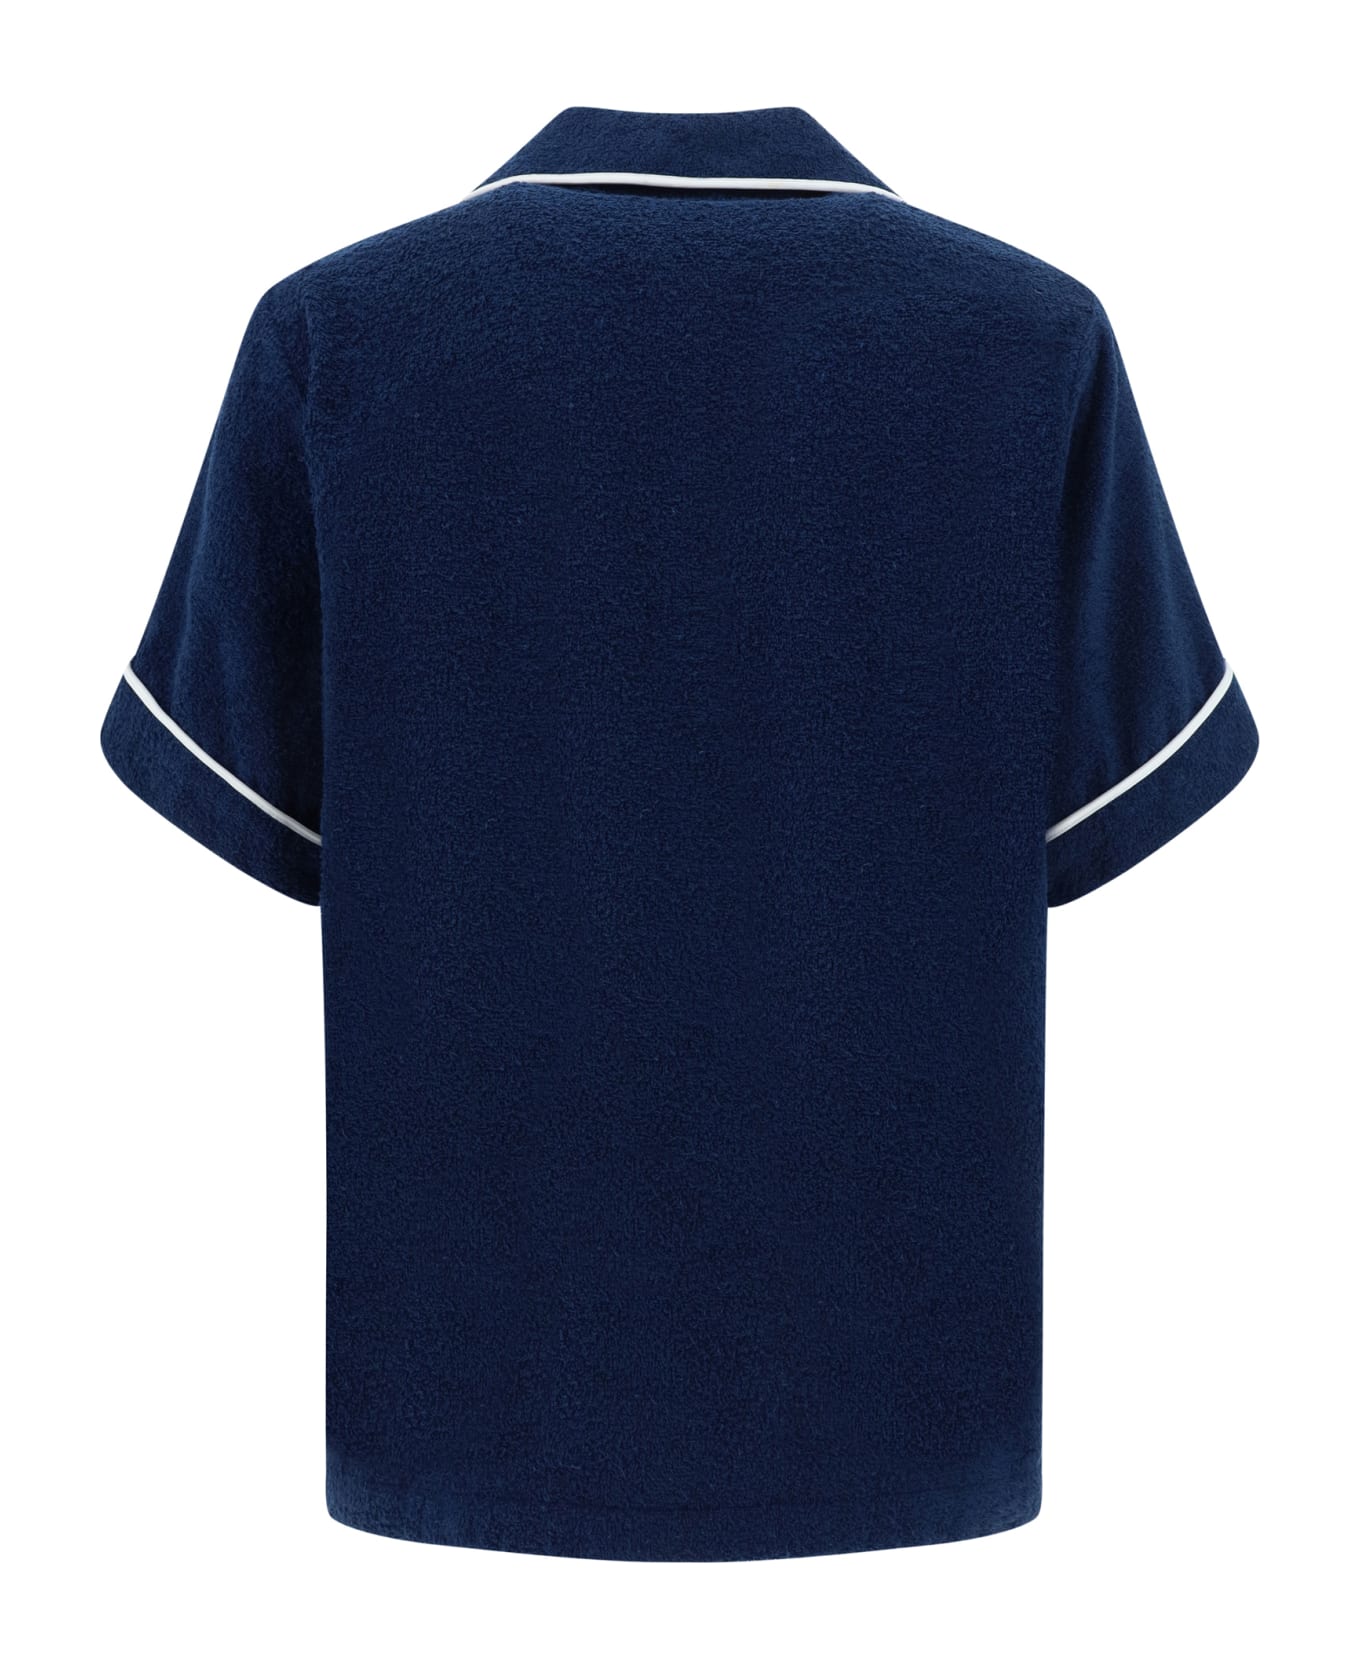 Prada Polo Shirt - Bleu